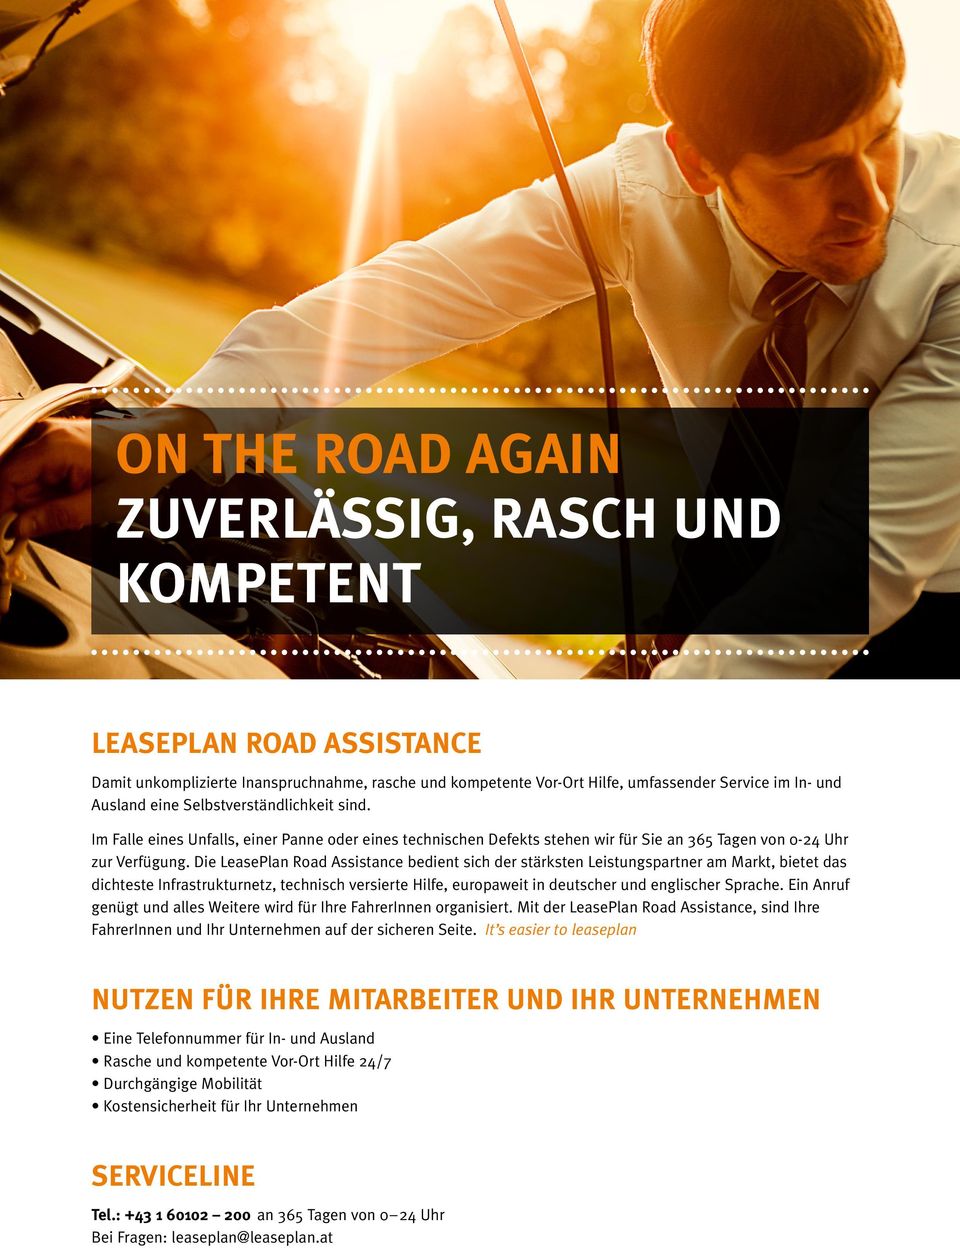 Die LeasePlan Road Assistance bedient sich der stärksten Leistungspartner am Markt, bietet das dichteste Infrastrukturnetz, technisch versierte Hilfe, europaweit in deutscher und englischer Sprache.